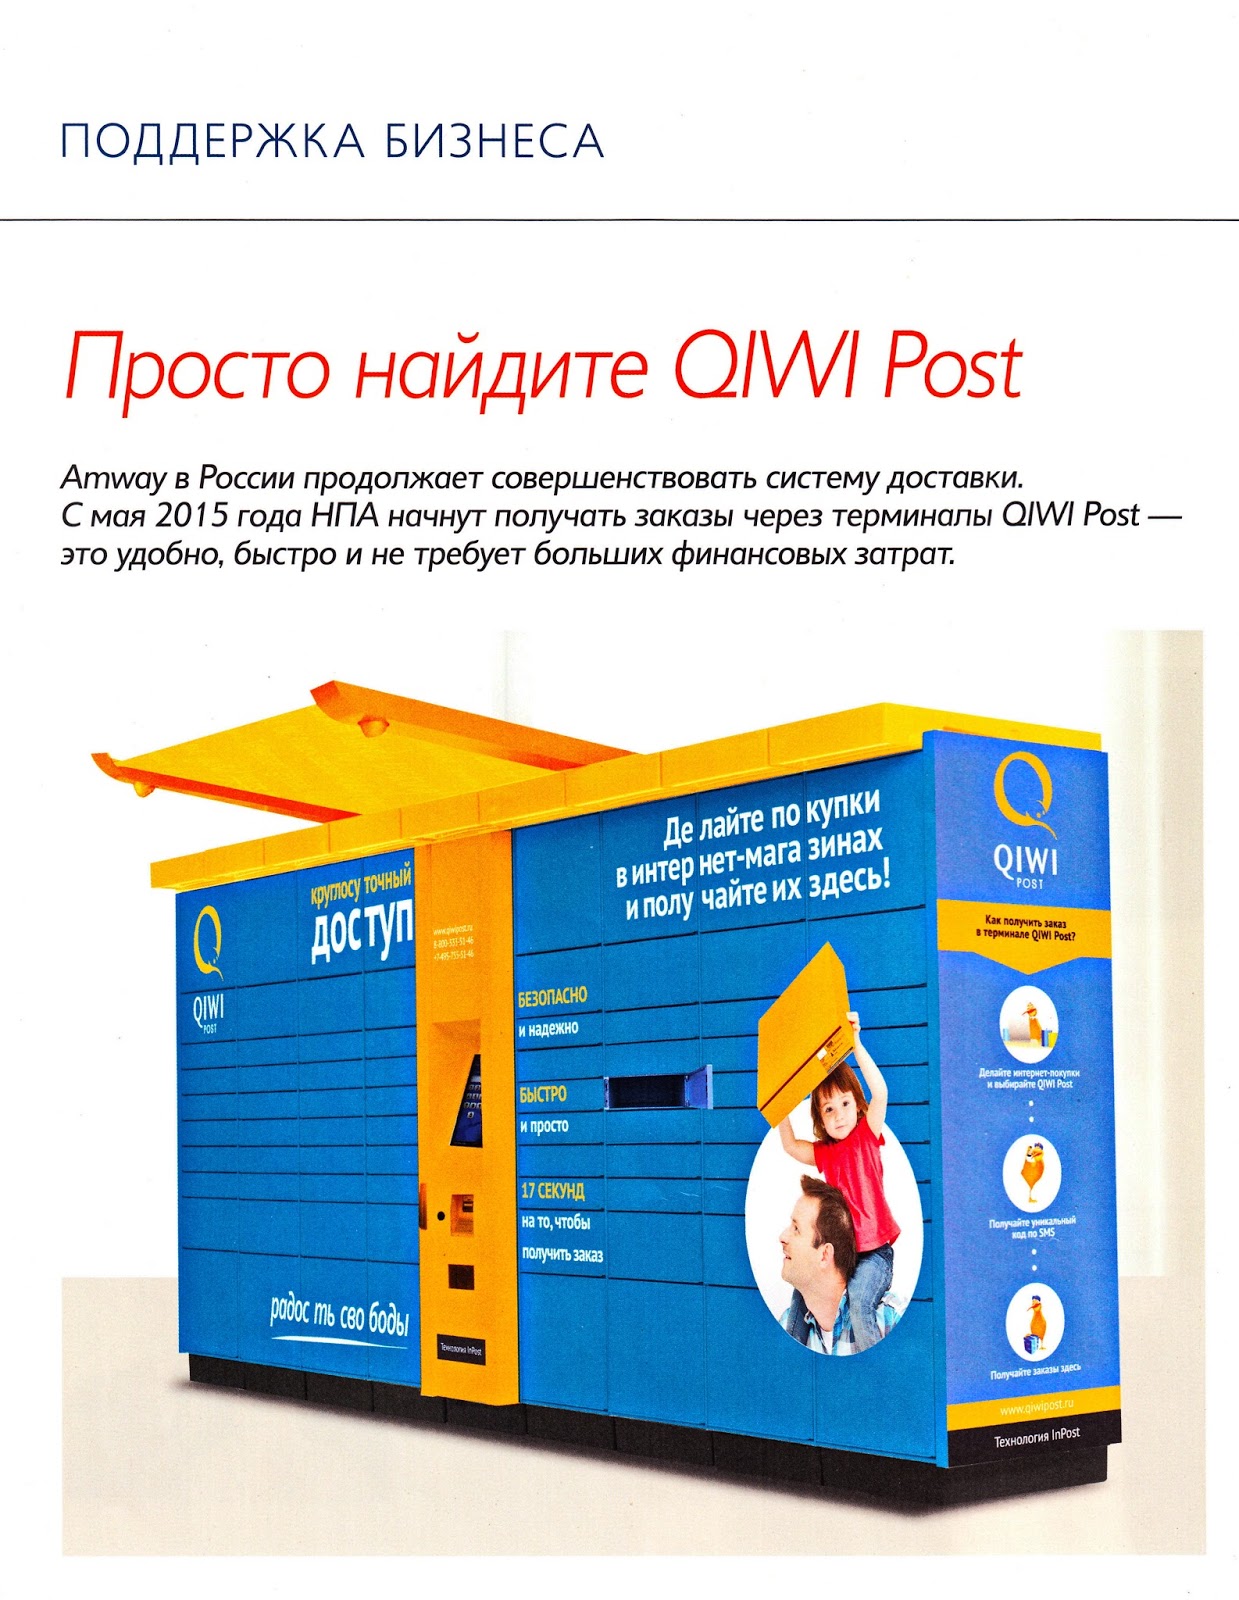 QIWI Post. Пост как заказать. 5 Post как получить заказ. Под систему доставкой заказать. Как получить заказ в 5post